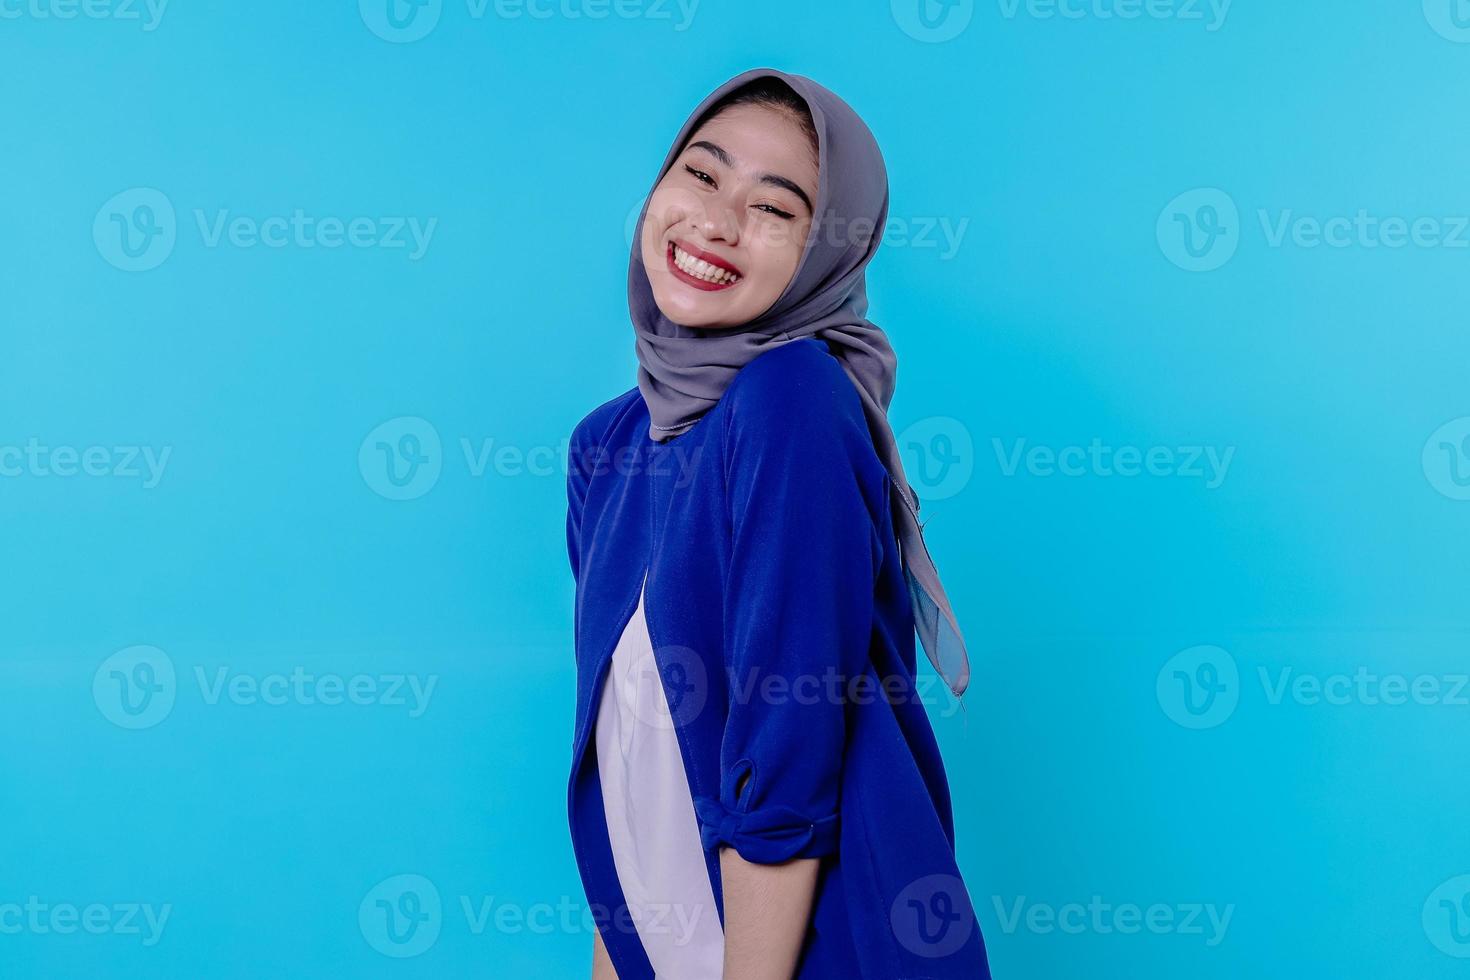 optimistische charmante aantrekkelijke jonge vrouw met schattige lachende vreugde met mooie witte glimlach op lichtblauwe achtergrond foto